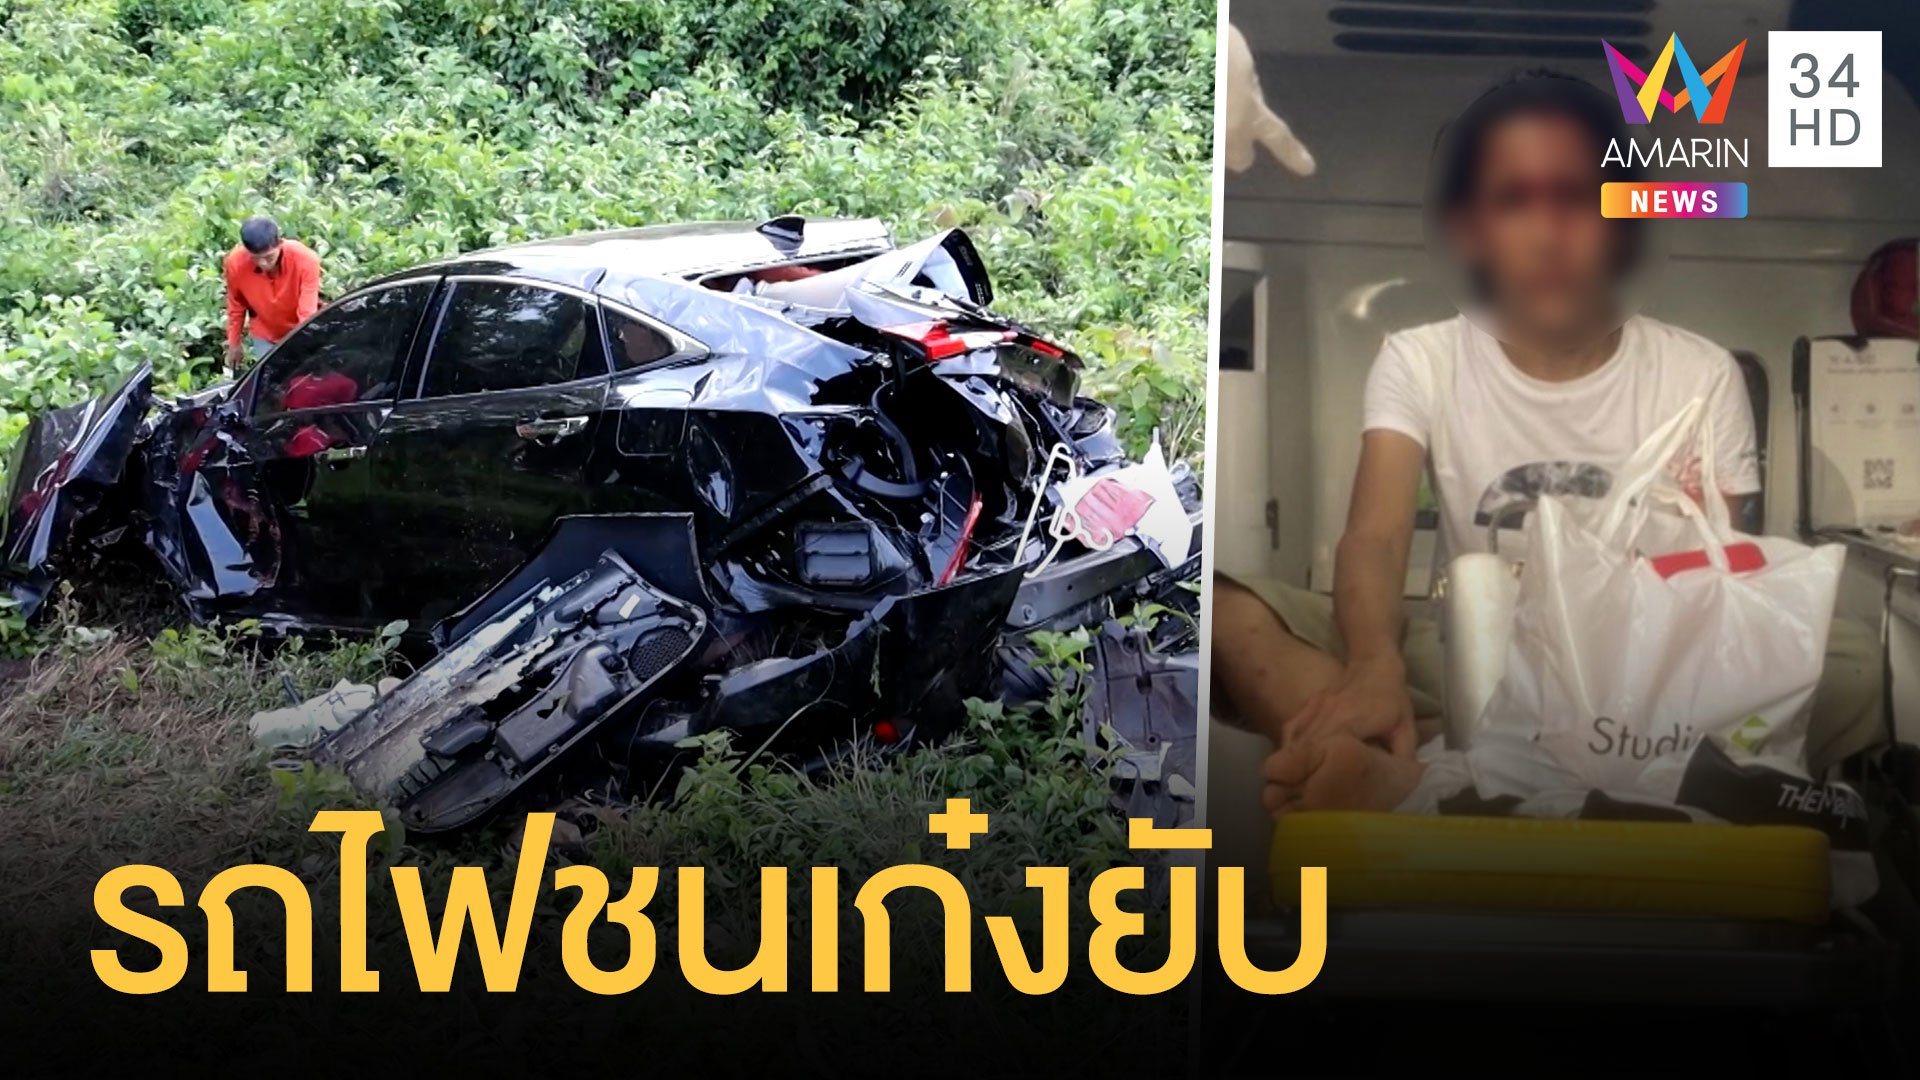 สาวสองเบญจเพสเพิ่งทำบุญเสร็จ ออกมาเจอรถไฟชนเฉียดตาย | ข่าวอรุณอมรินทร์ | 18 เม.ย. 64 | AMARIN TVHD34